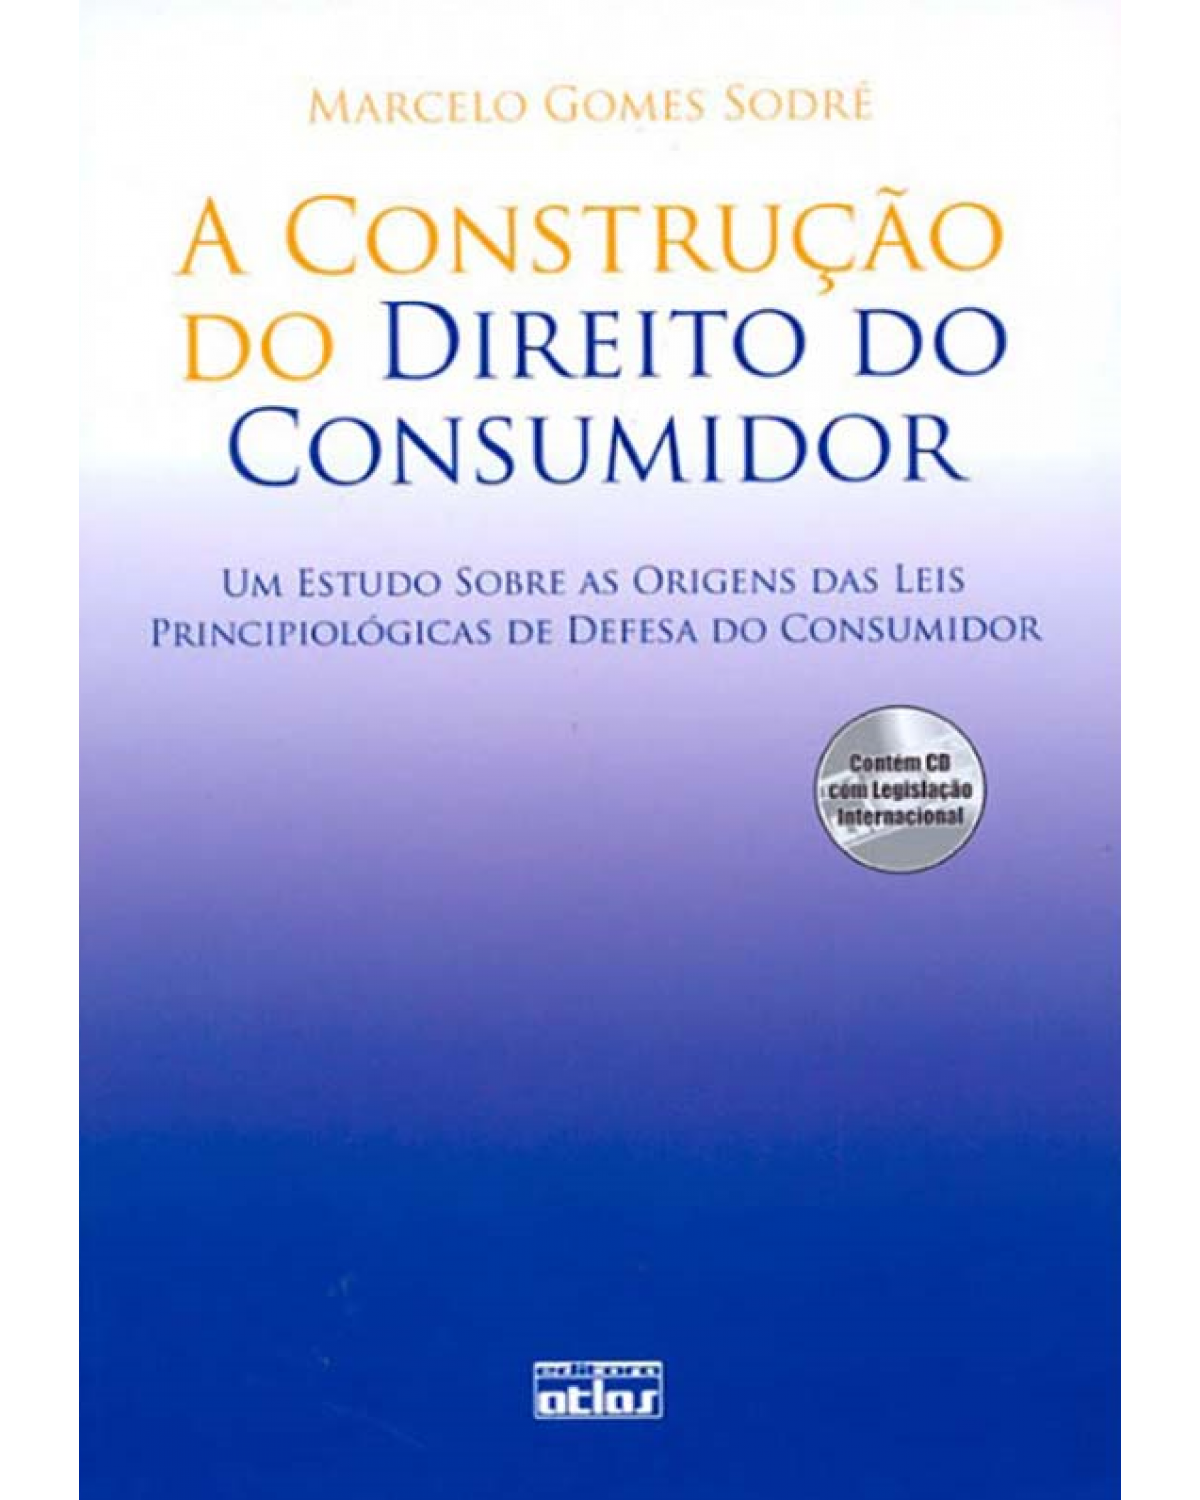 A construção do direito do consumidor - Um estudo sobre as origens das leis principiológicas de defesa do consumidor - 1ª Edição | 2009